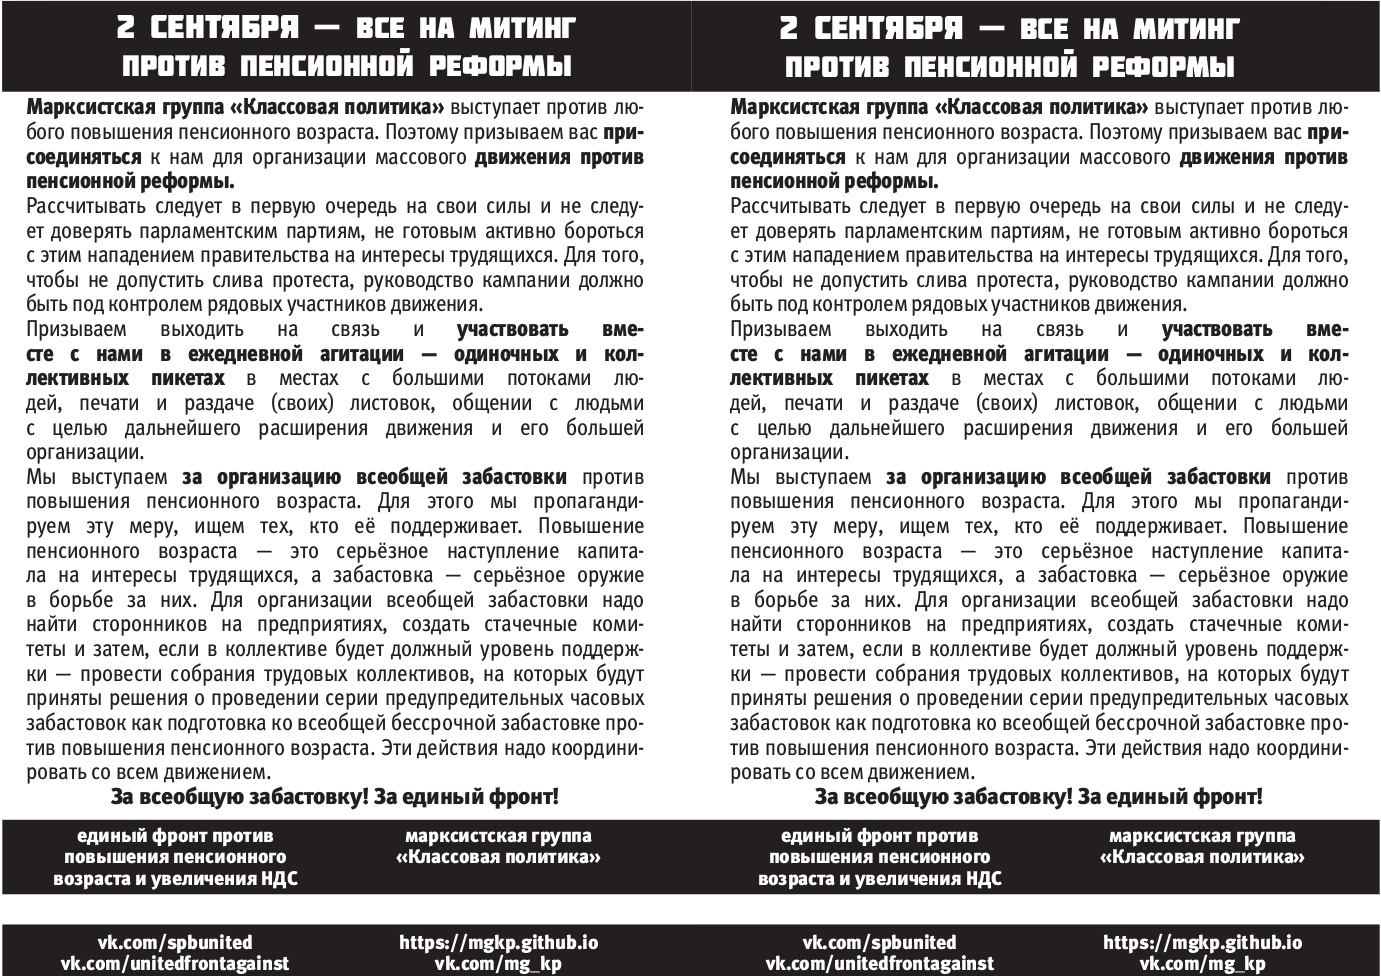 изображение: листовка МГКП с приглашением на митинг КПРФ против пенсионной реформы 2 сентября